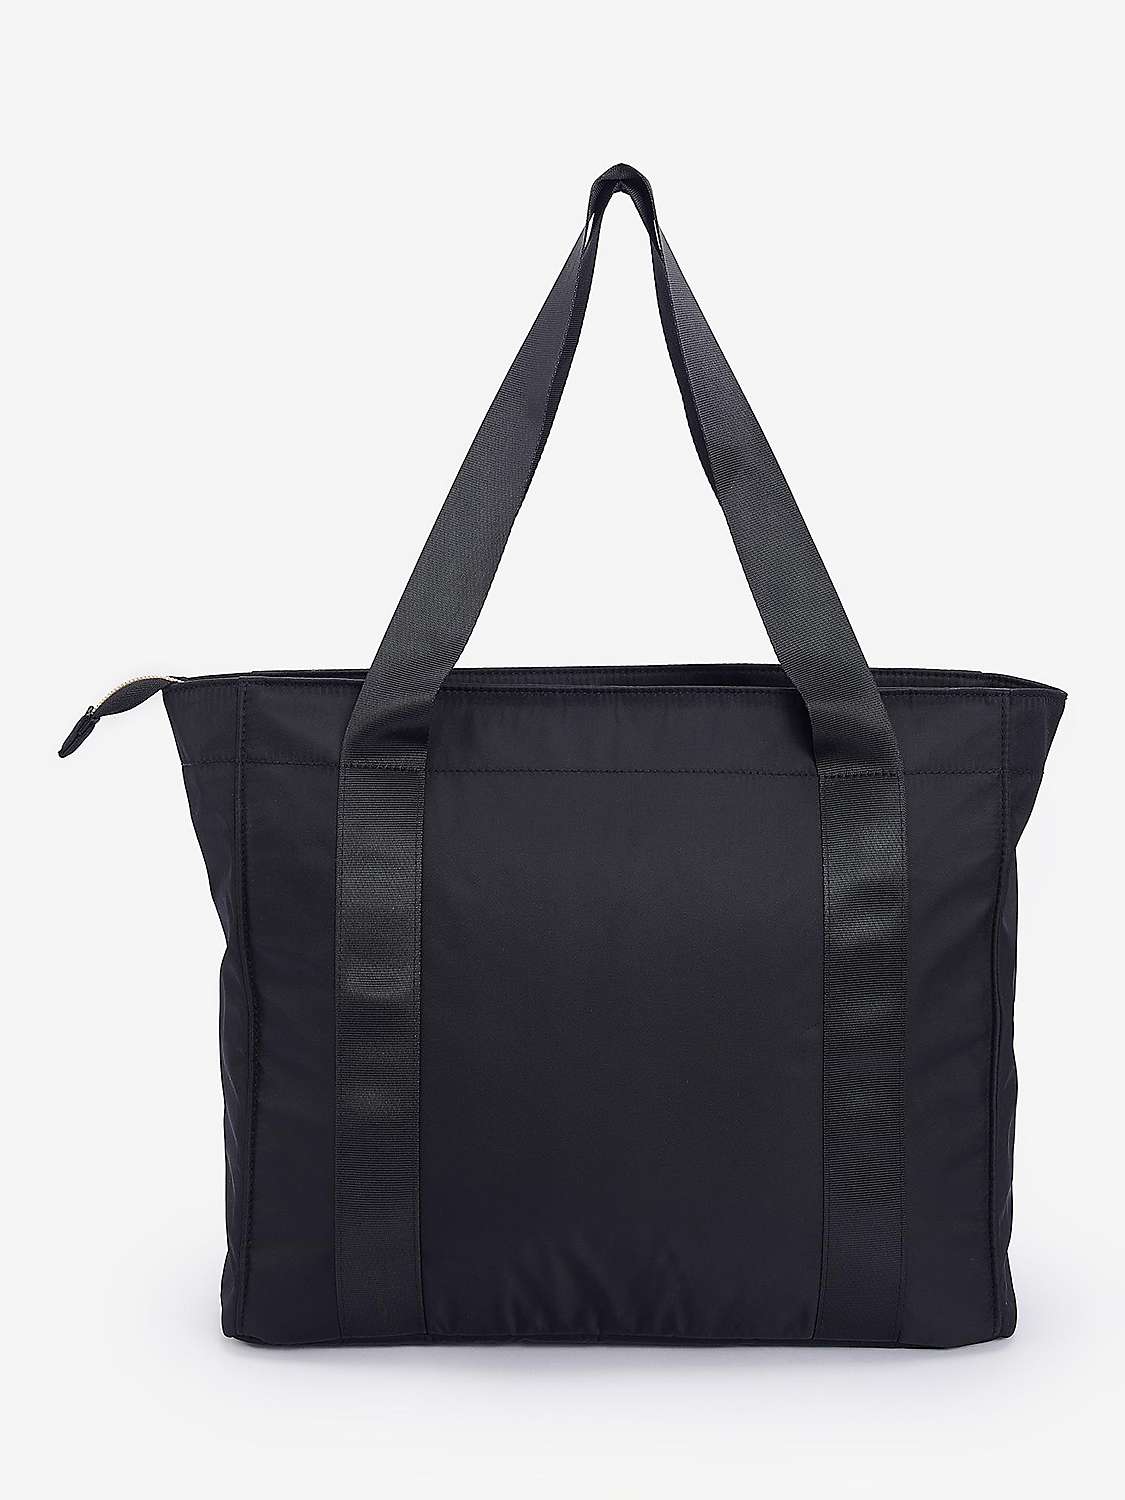 Buy Barbour International Qualify Tote Bag, Black Online at johnlewis.com